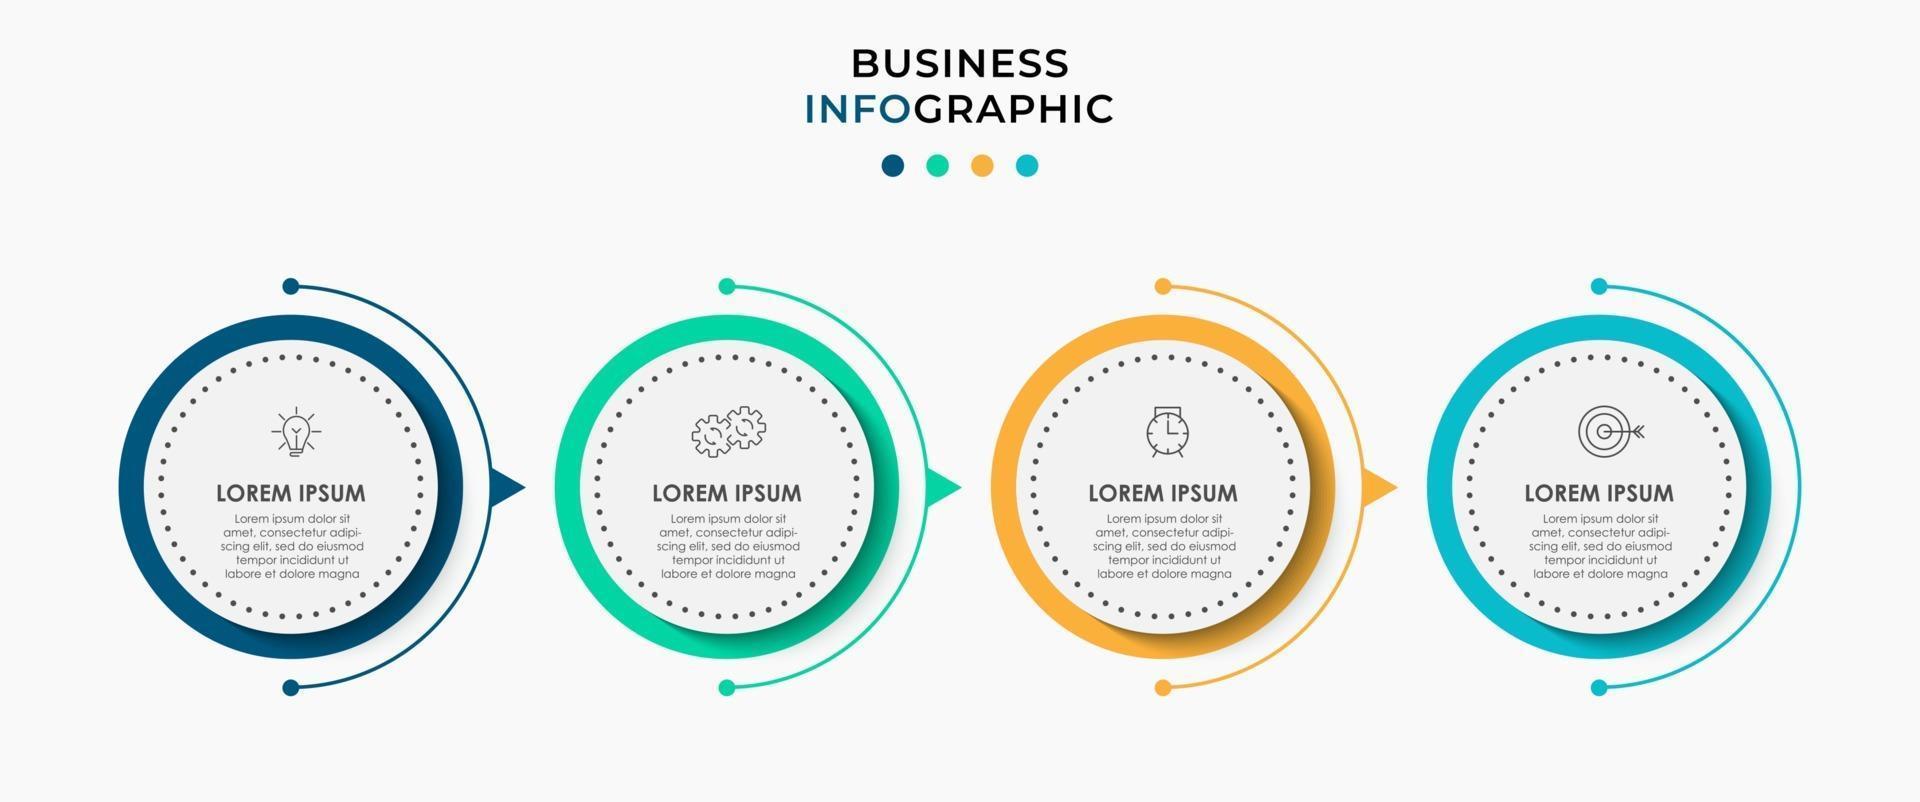 Il vettore di progettazione infografica e le icone di marketing possono essere utilizzate per il layout del flusso di lavoro, il diagramma, la relazione annuale, il web design. concetto di business con 4 opzioni, passaggi o processi.